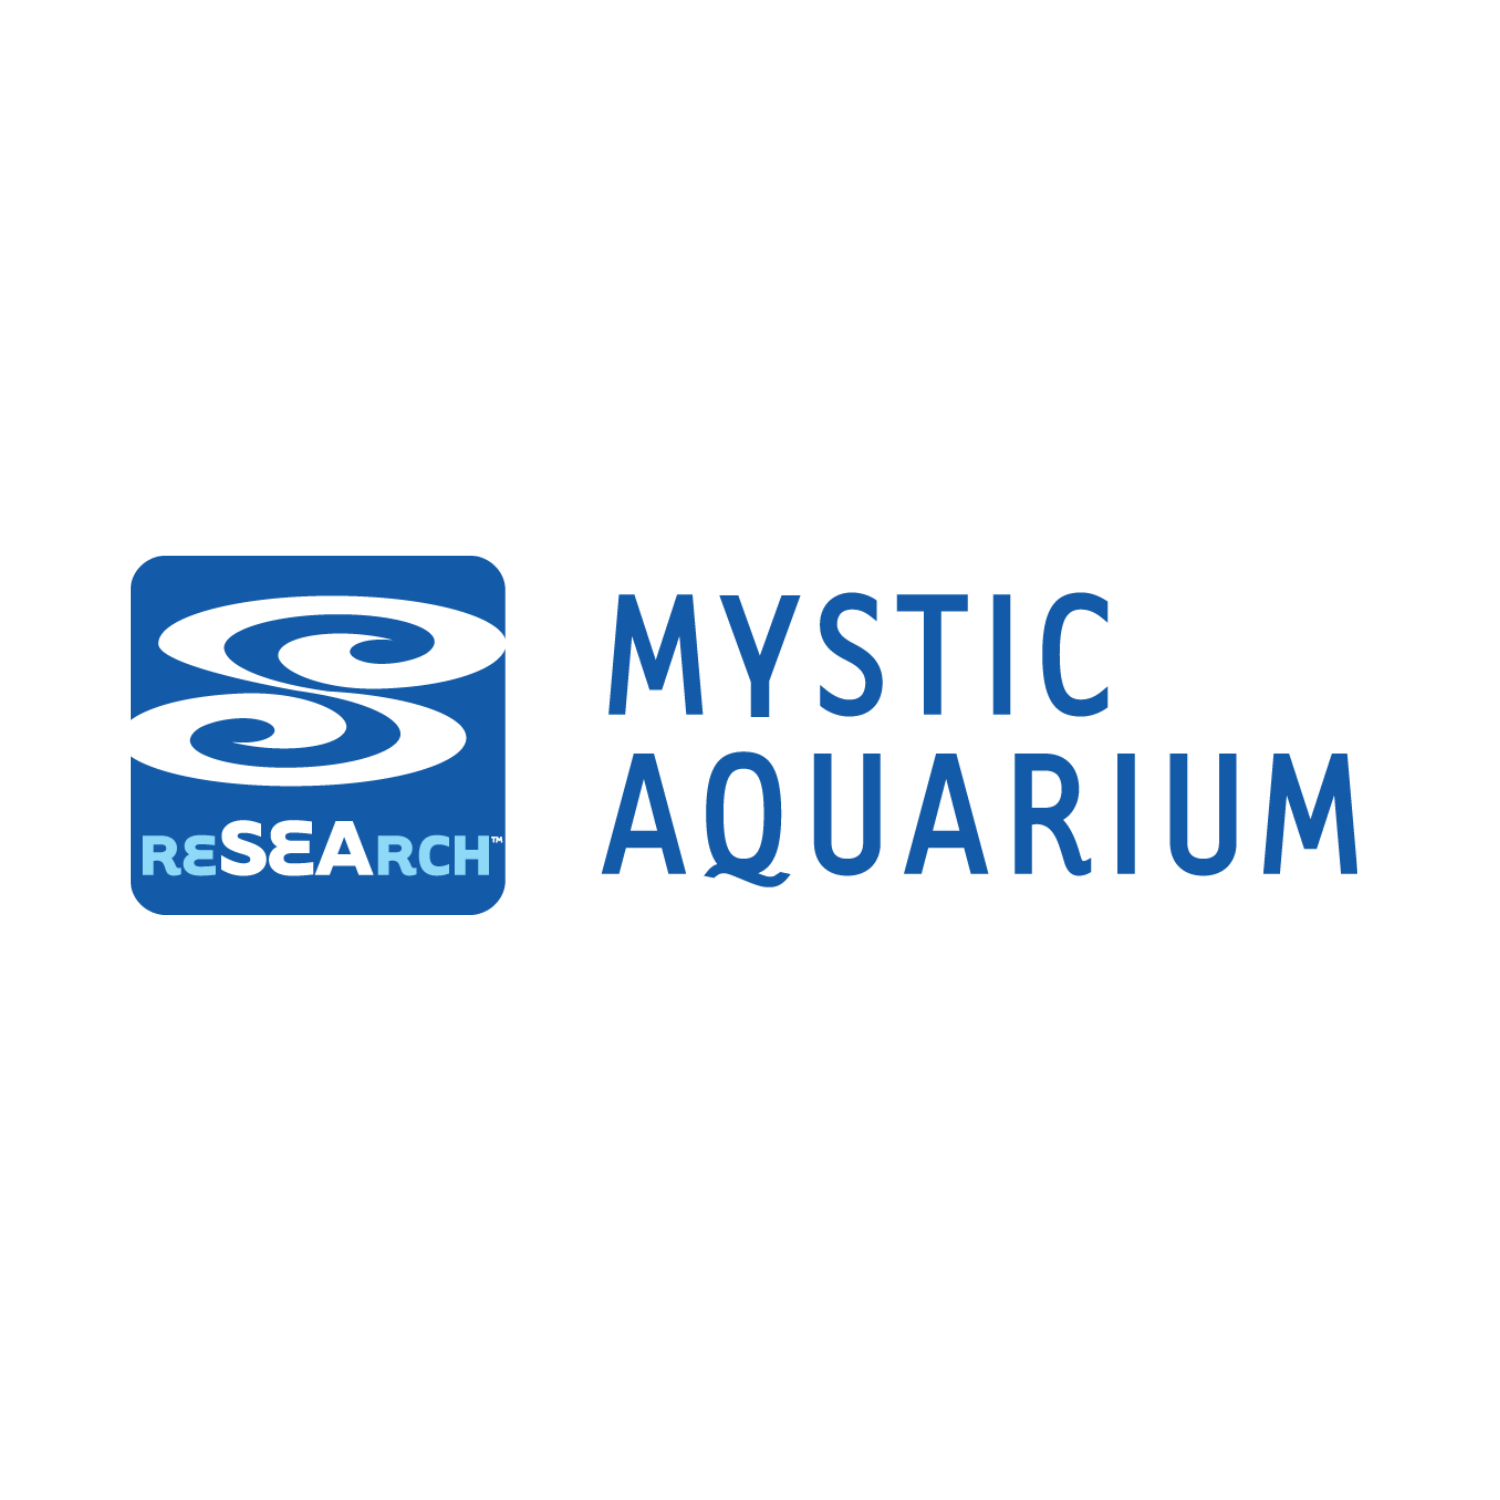 290-2909319_mystic-aquarium-research-experiences-for-undergraduates-mystic-aquarium